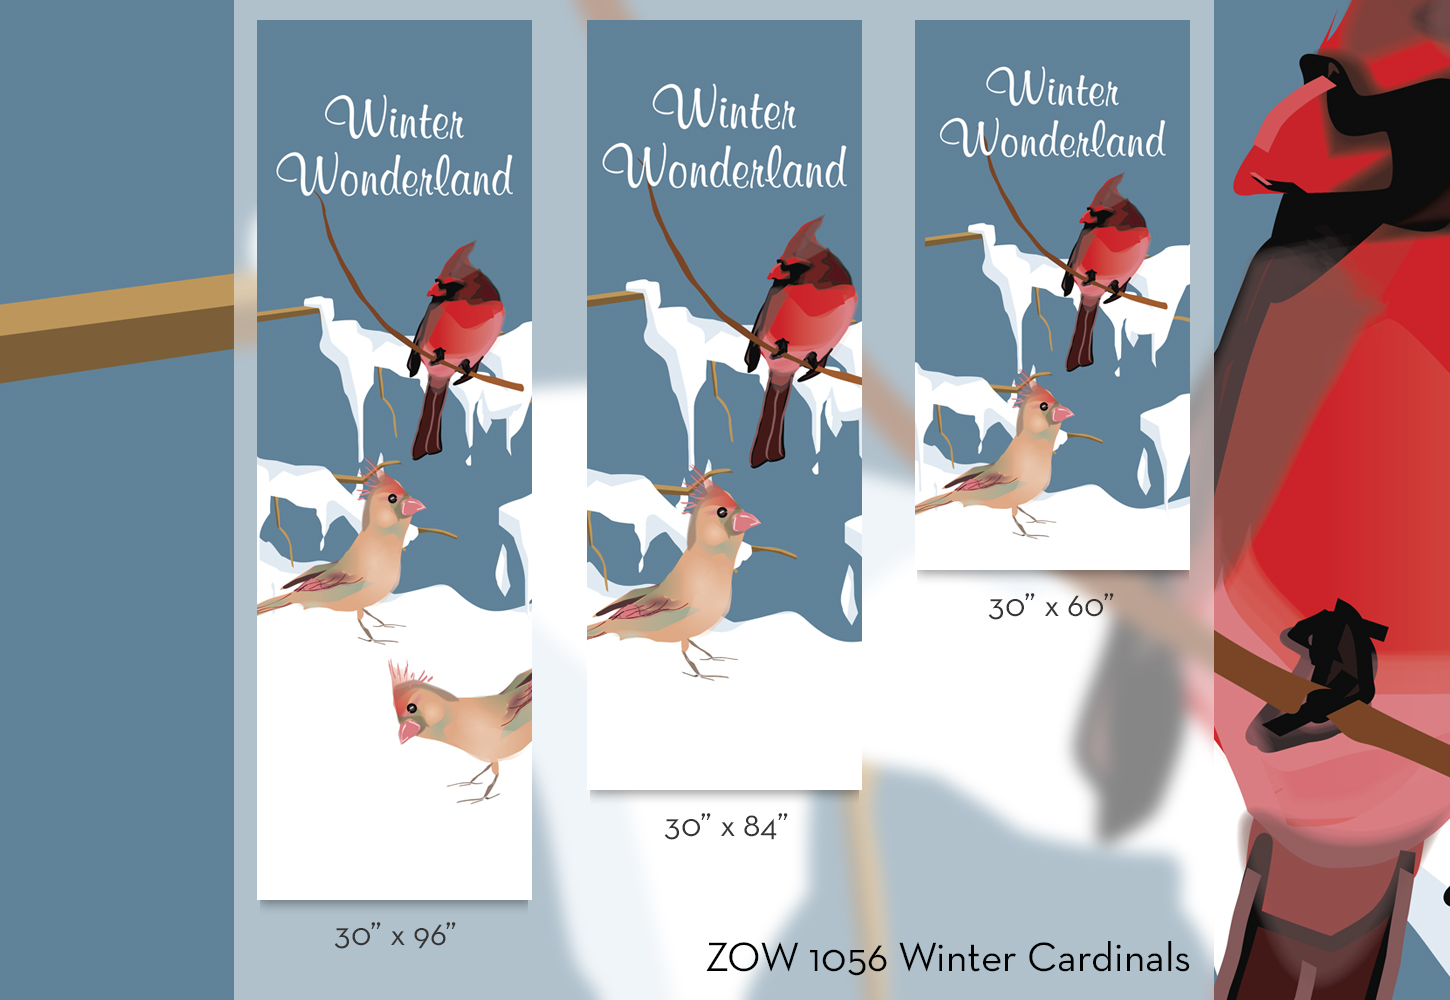 ZOW 1056 Winter Cardinals